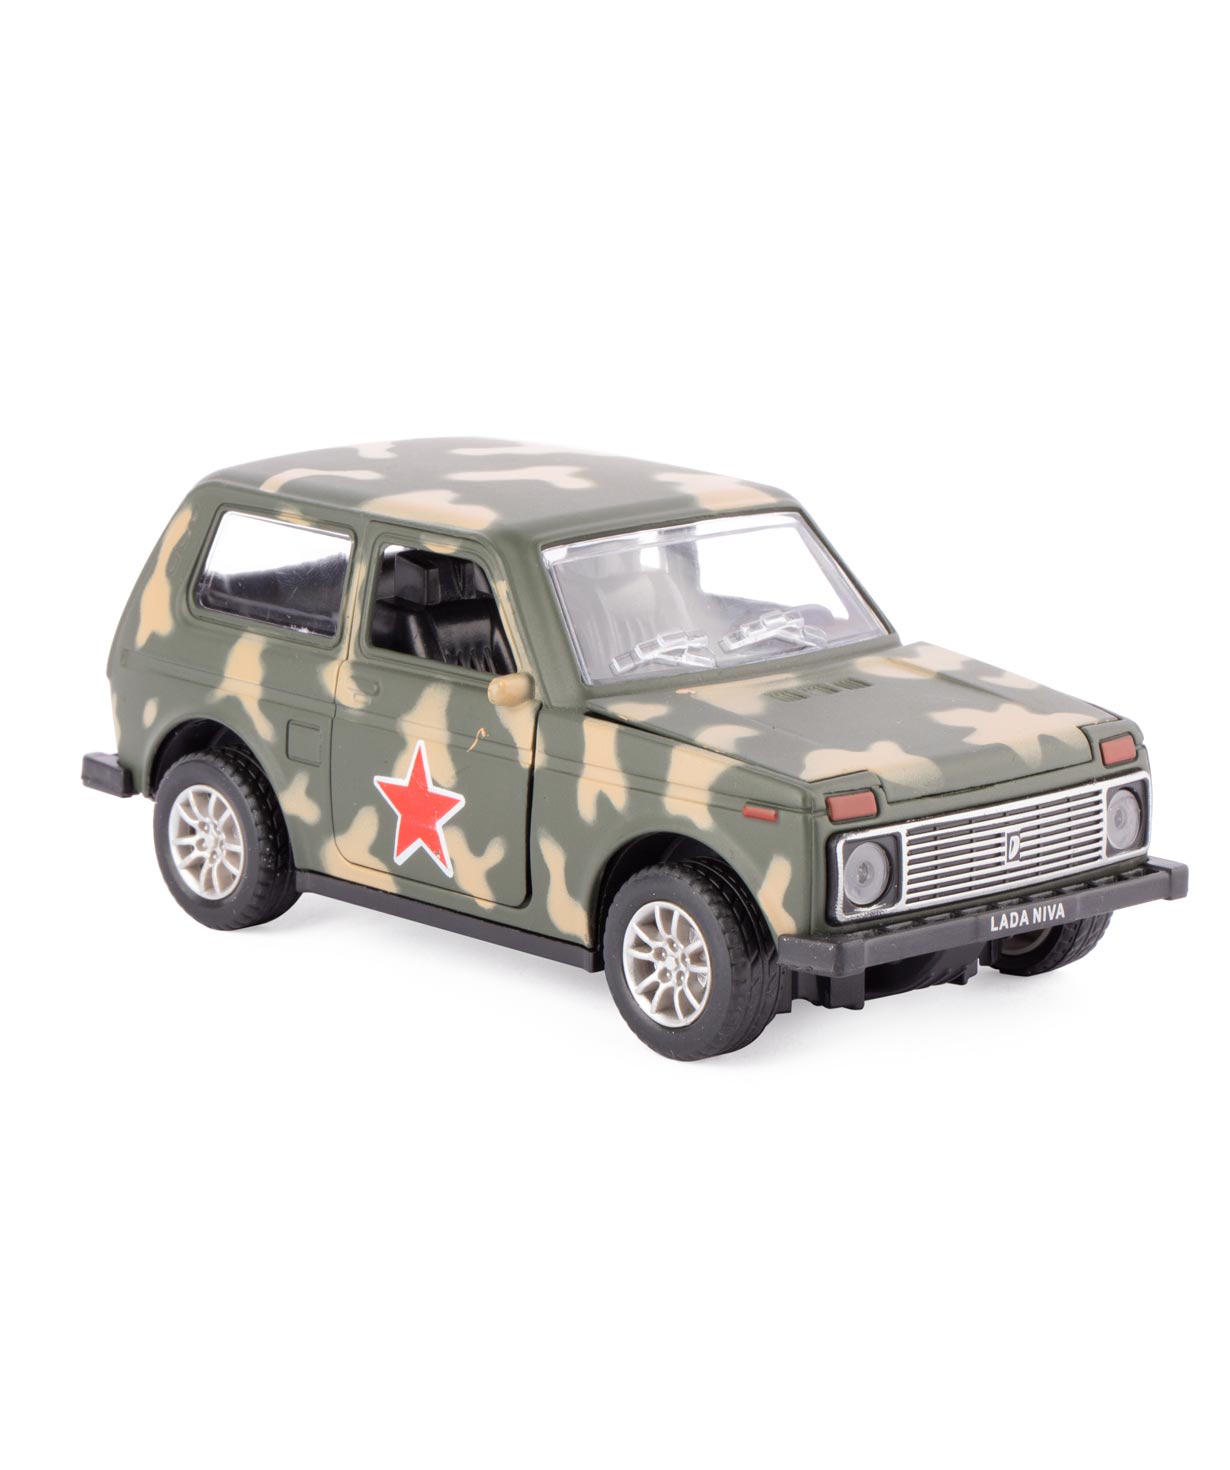 Խաղալիք «Basic Store» զինվորական մեքենա Lada Niva